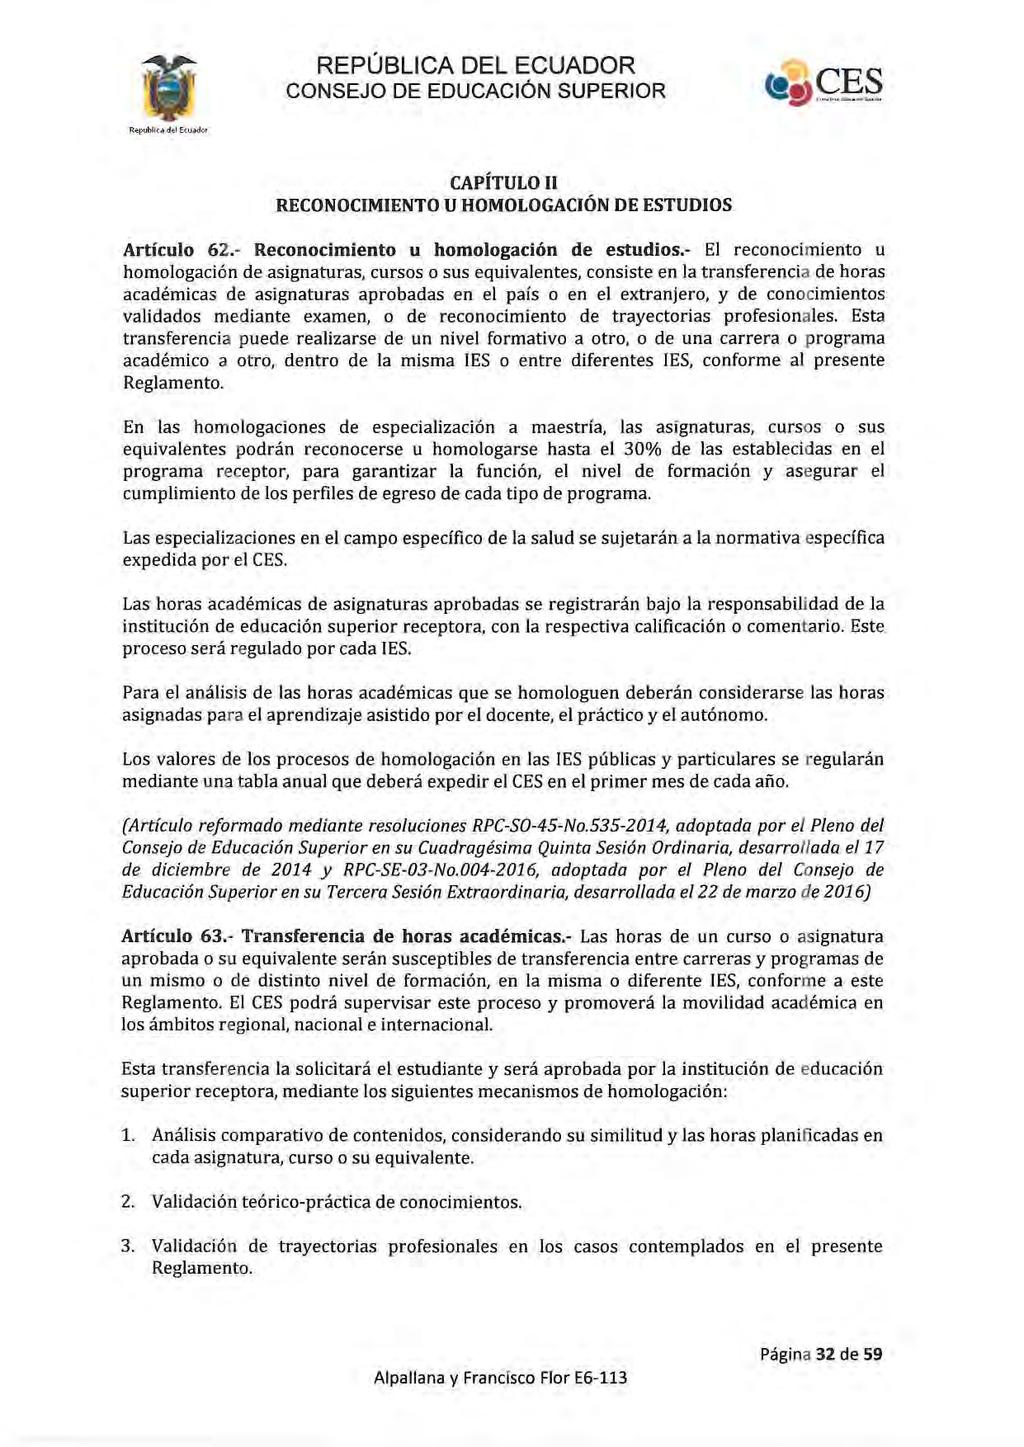 ... "... REPÚBLICA DEL ECUADOR CAPÍTULO II RECONOCIMIENTO U HOMOLOGACiÓN DE ESTUDIOS Artículo 62.- Reconocimiento u homologación de estudios.